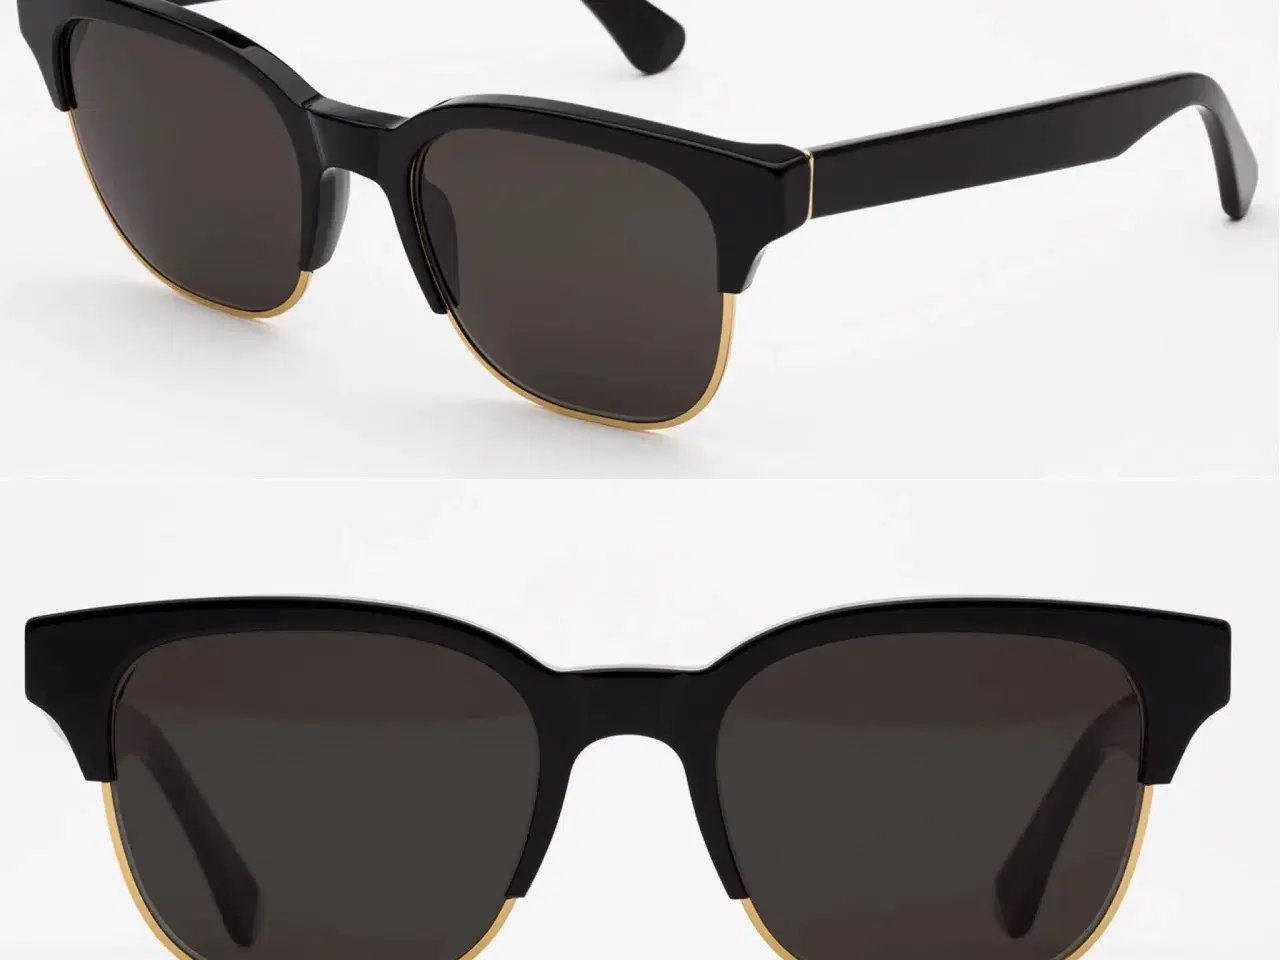 Billede 9 - RetroSuperFuture solbriller 